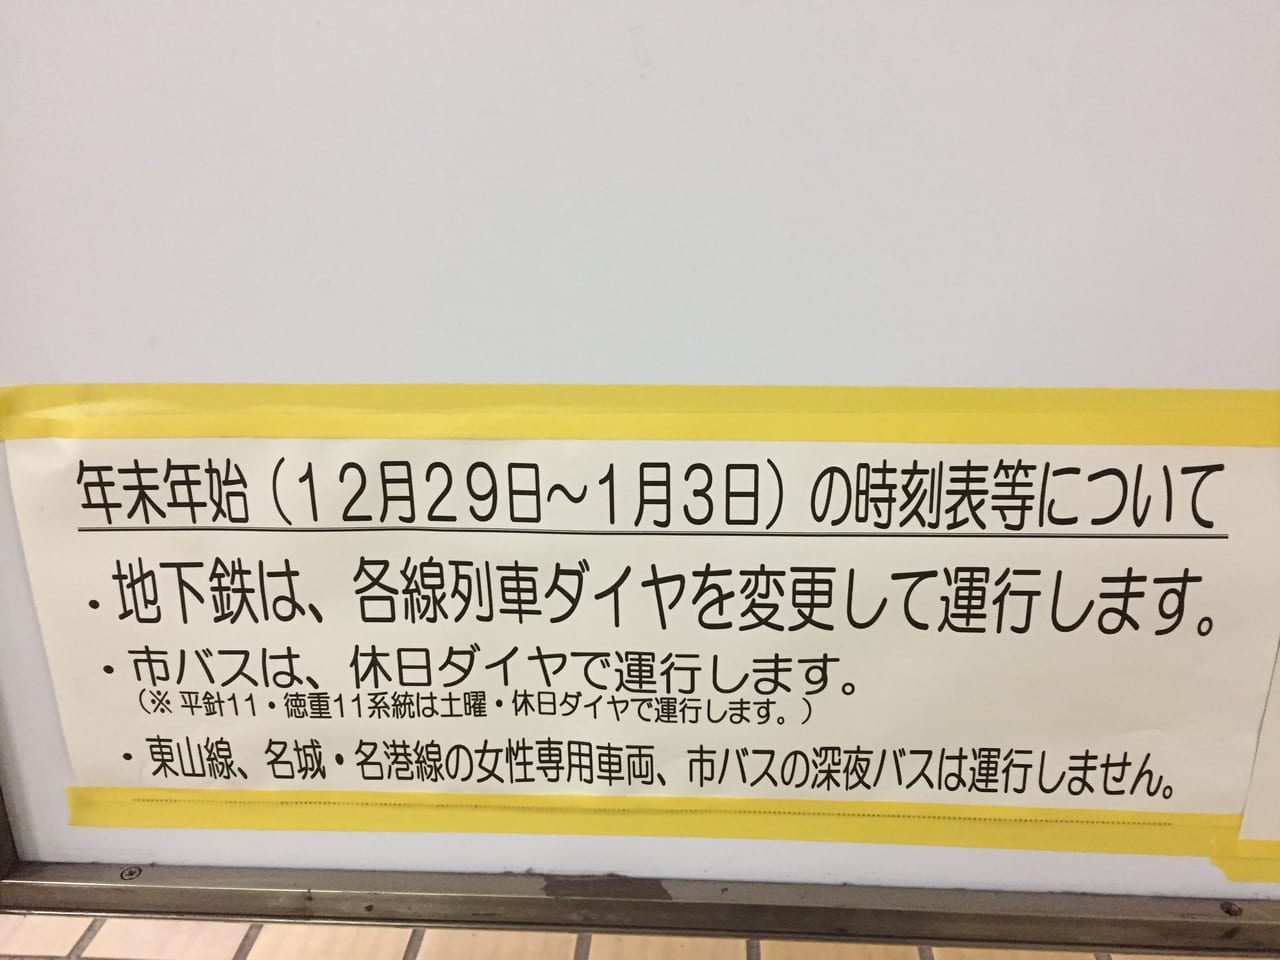 名古屋市営地下鉄年末年始運行ダイヤについてのお知らせ